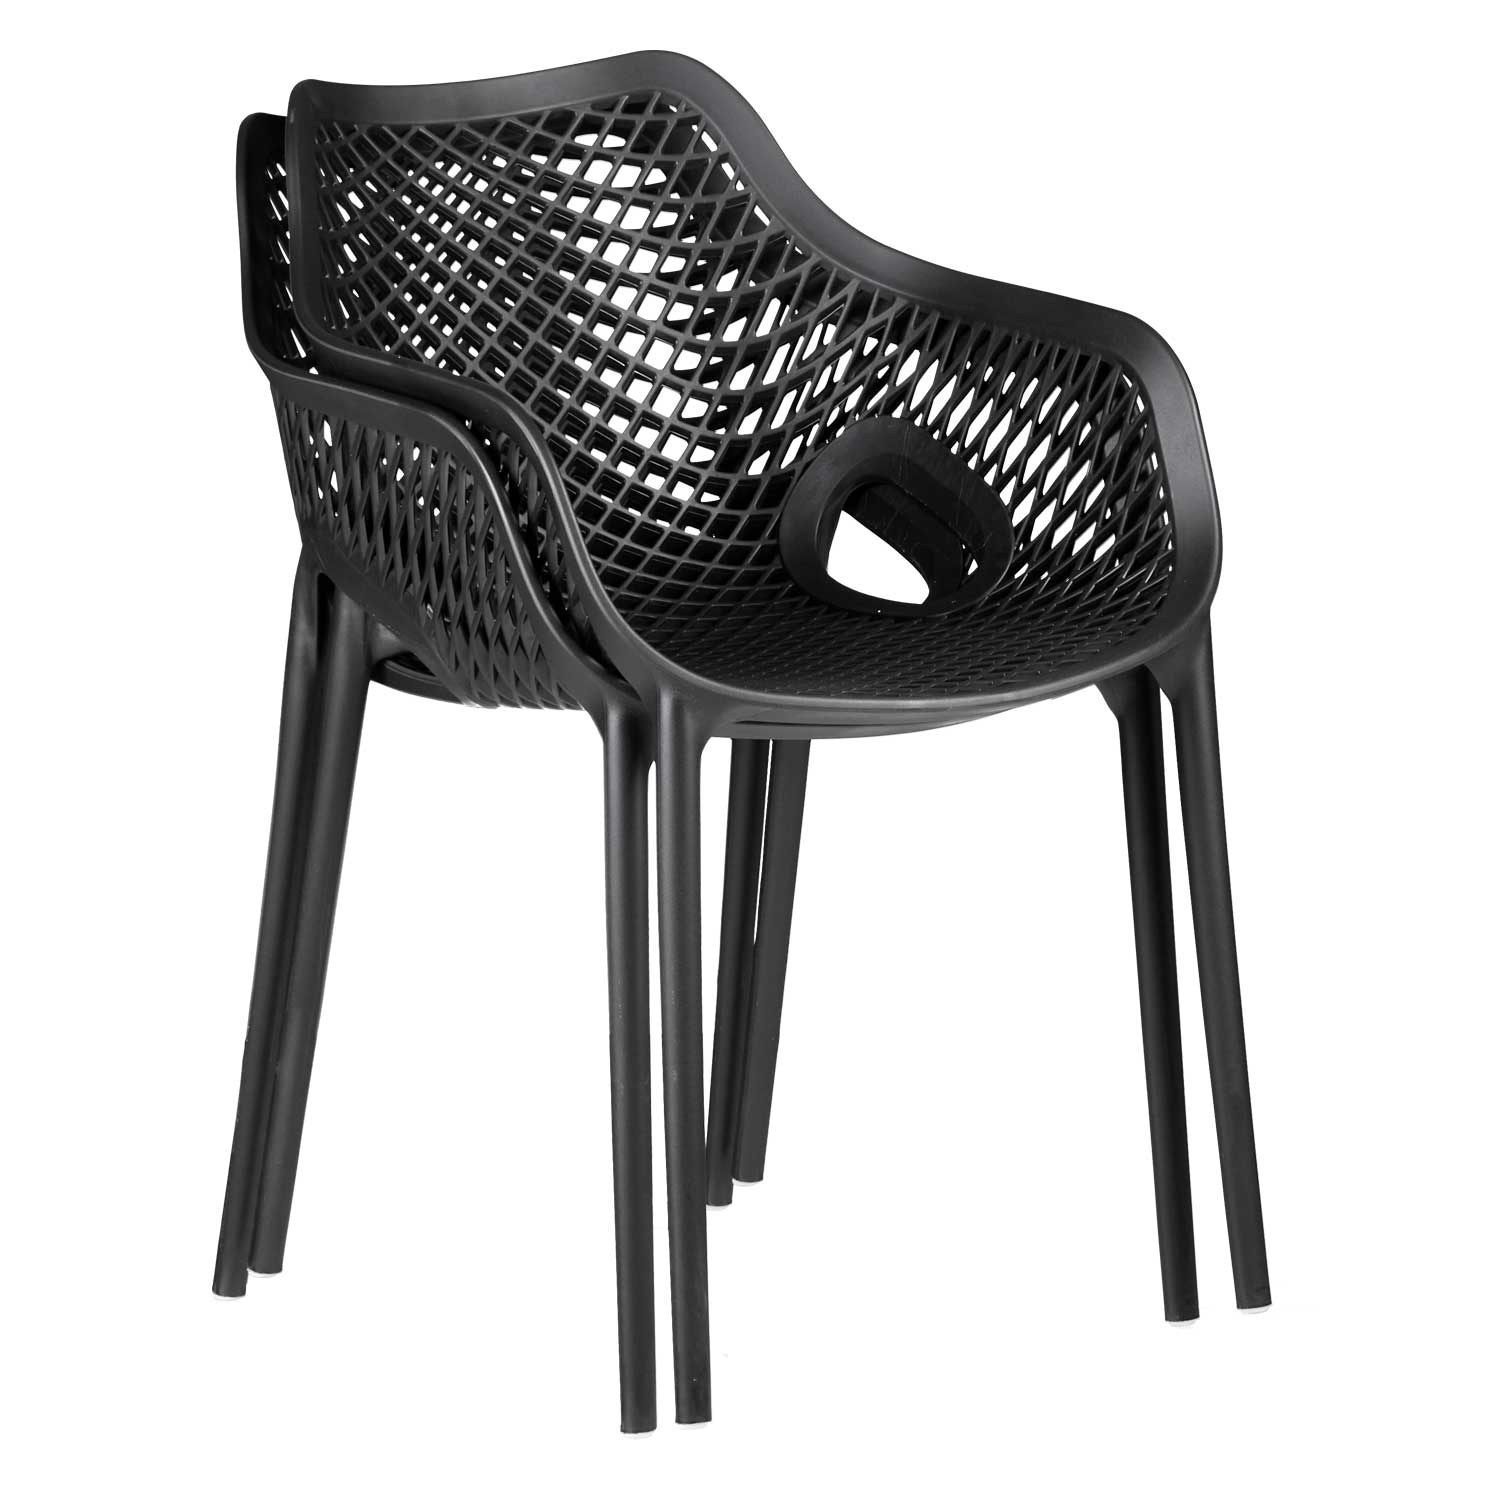 Chaise de jardin avec accoudoirs Noir Lot de 6 Fauteuils de jardin Plastique Chaises exterieur Chaises empilable